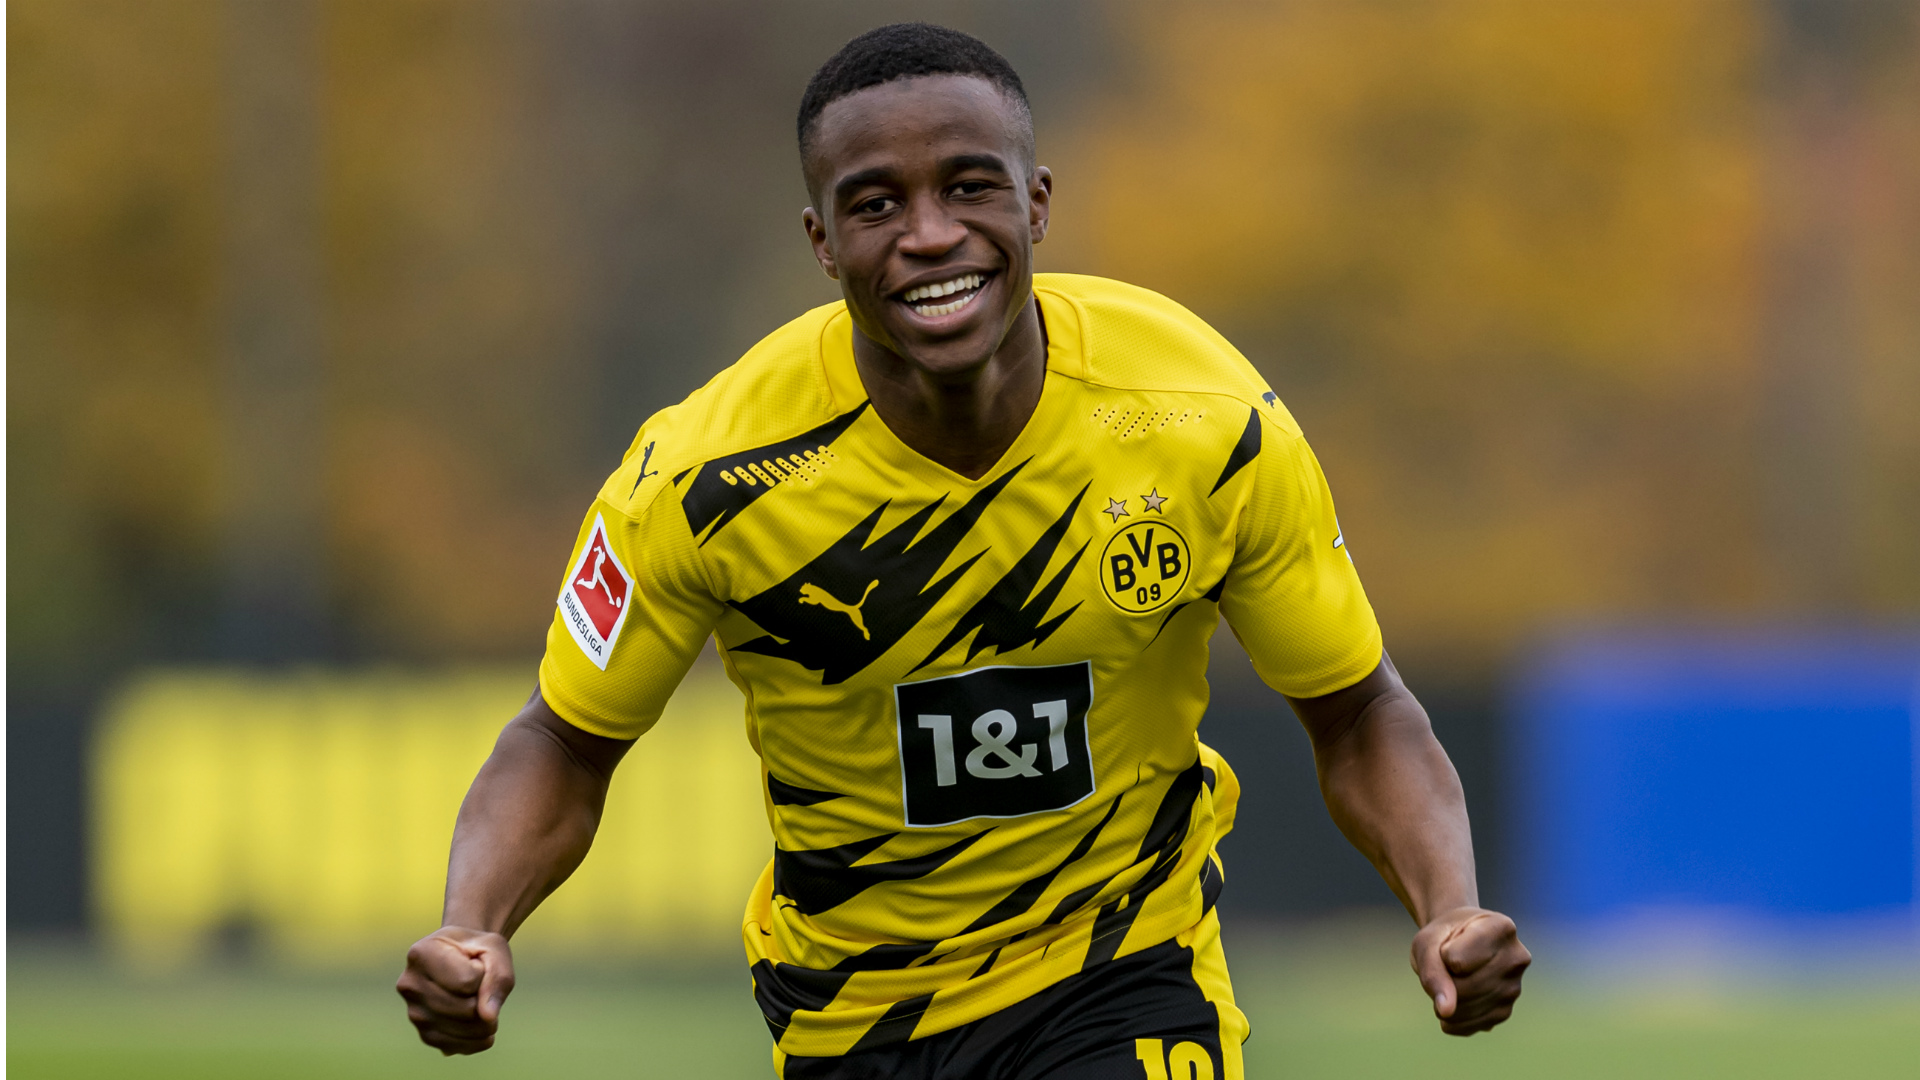 Tám cầu thủ trẻ nhất từng chơi cho Borussia Dortmund: Moukoko, Sahin, Reyna, Bellingham và hơn thế nữa (phần 1)